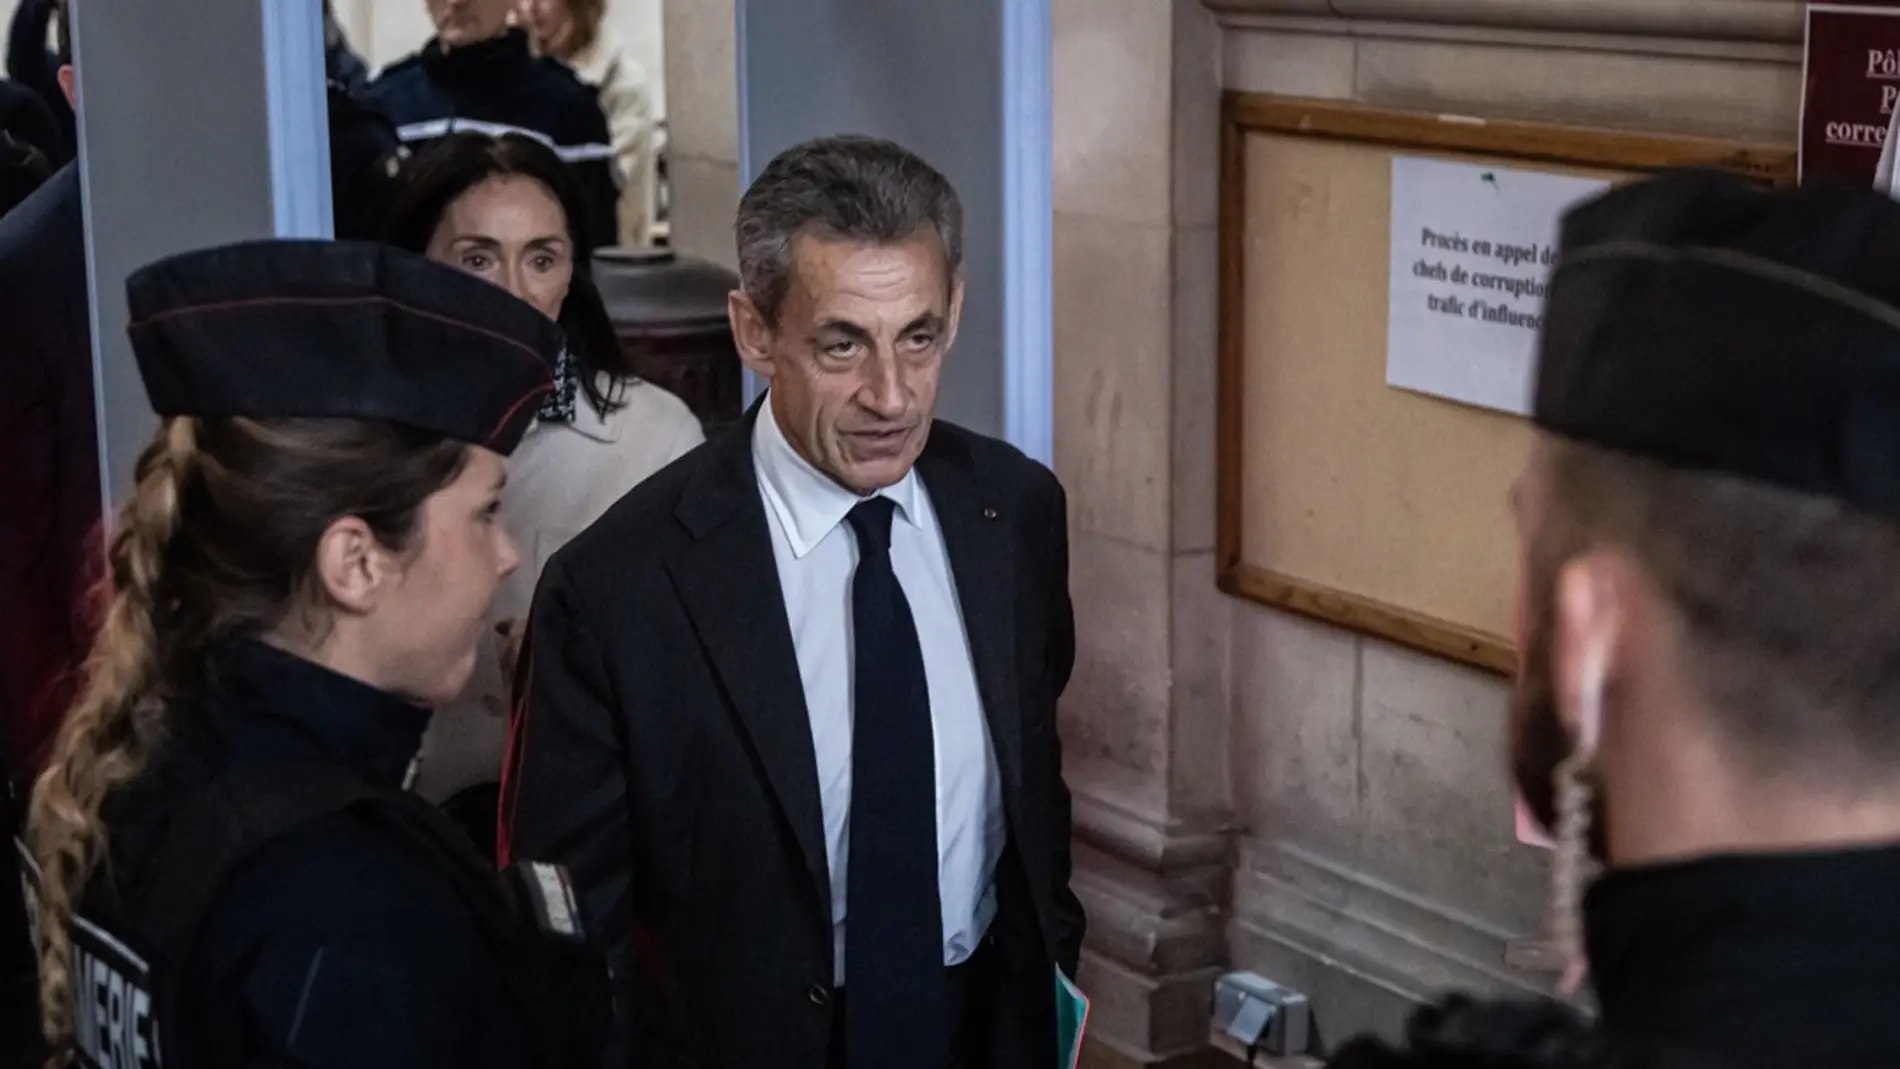 Confirman la sentencia de cárcel a Nicolás Sarkozy por corrupción/ EFE/EPA/CHRISTOPHE PETIT TESSON